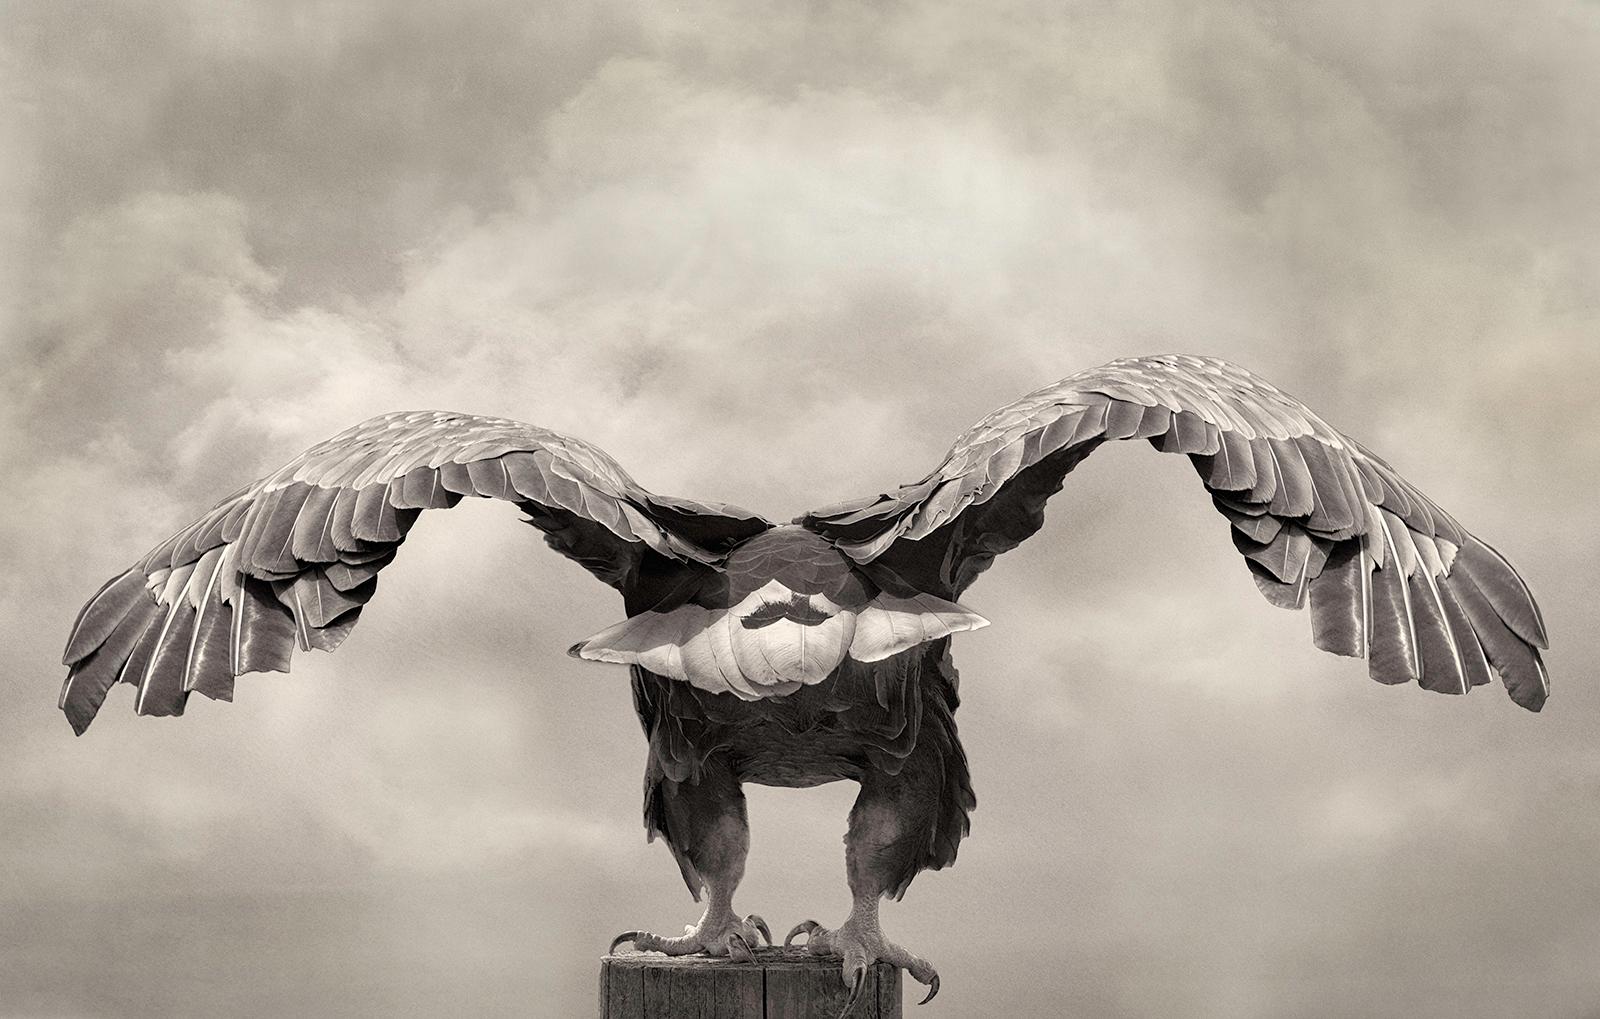 Sea Eagle, Fotografie in limitierter Auflage, signiert, Platin/Palladiumdruck